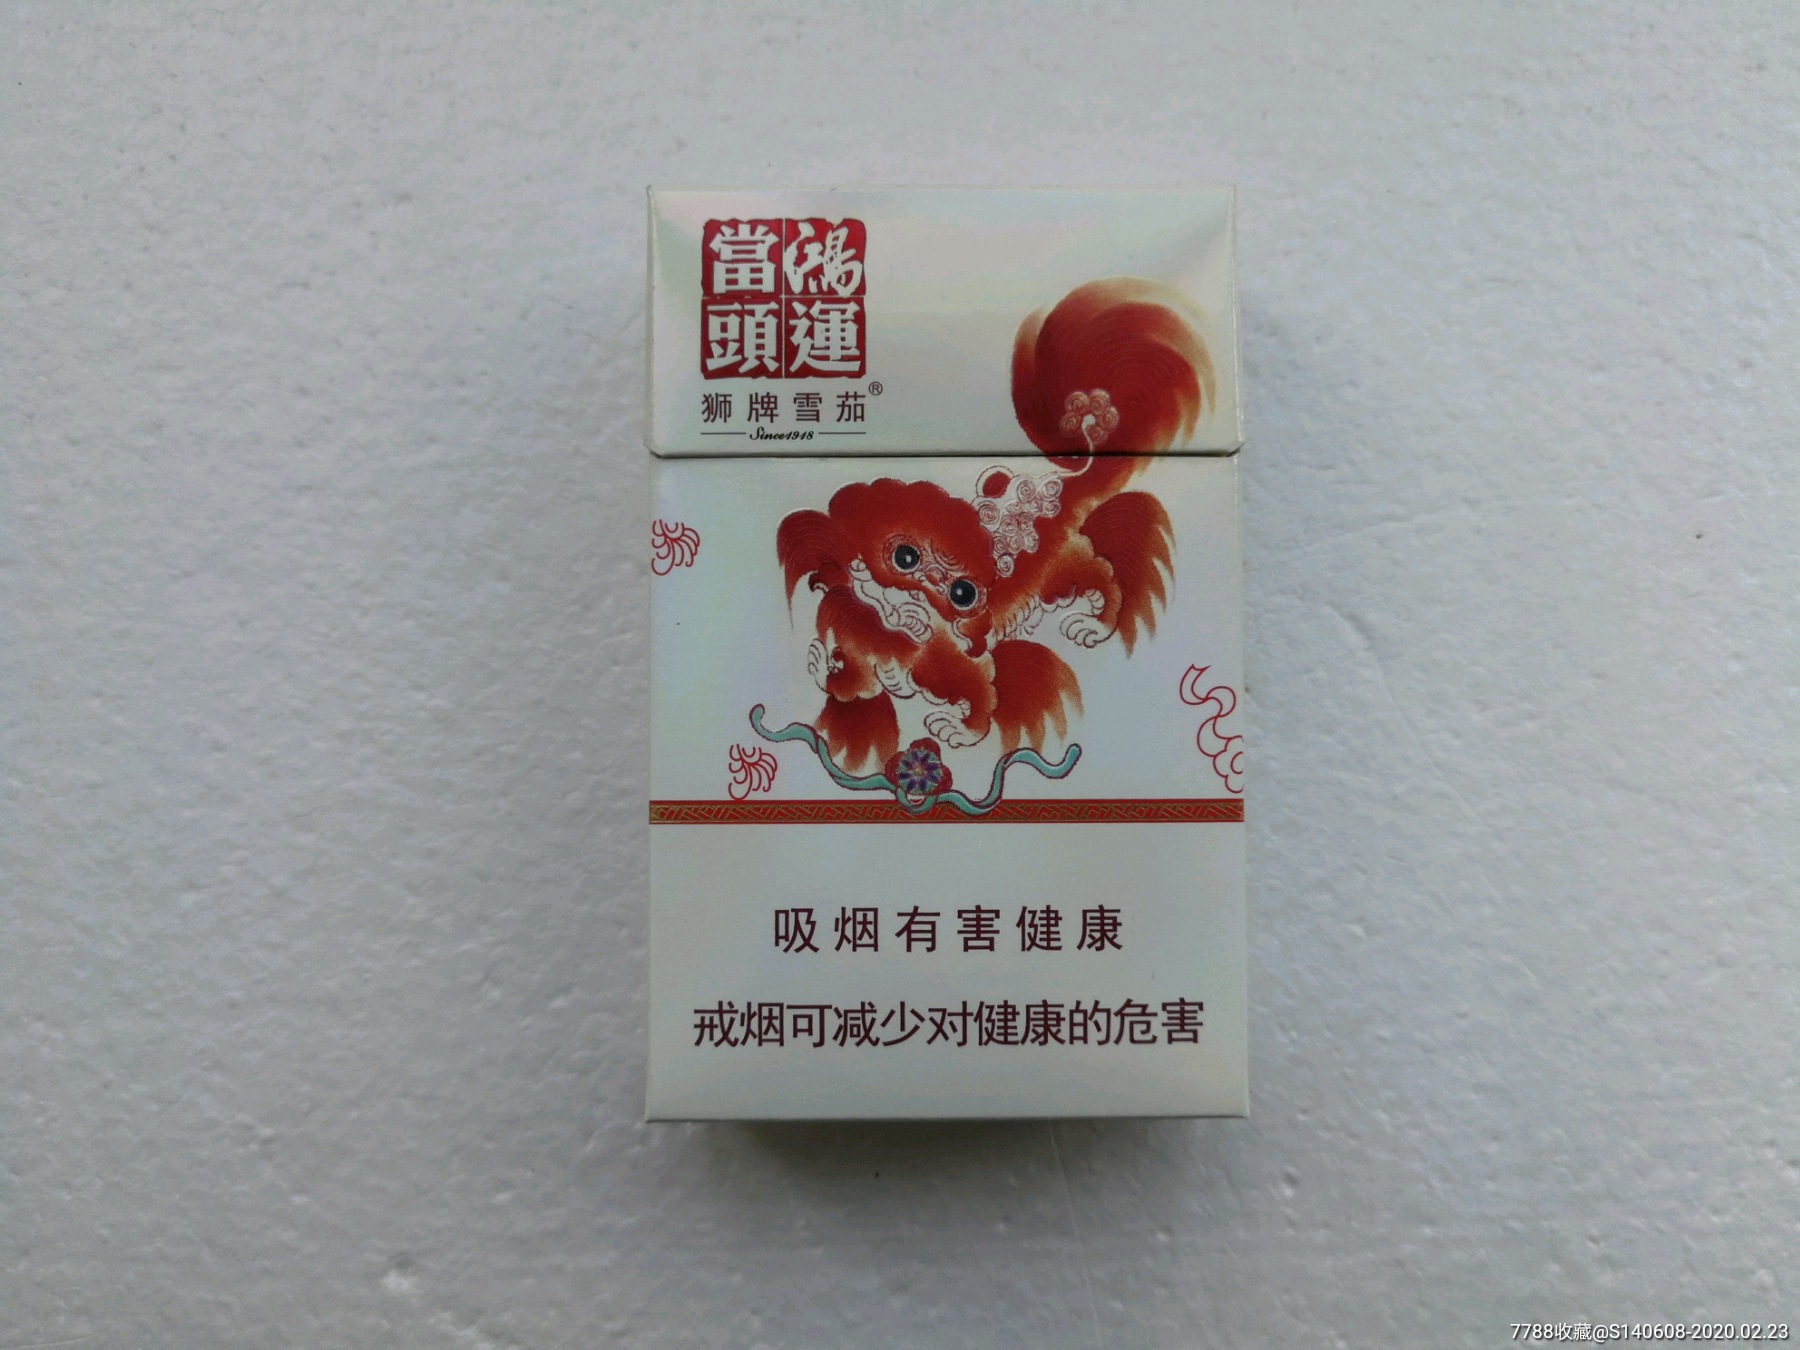 狮牌雪茄鸿运当头【12版】3d-价格:12.0000元-se-烟标